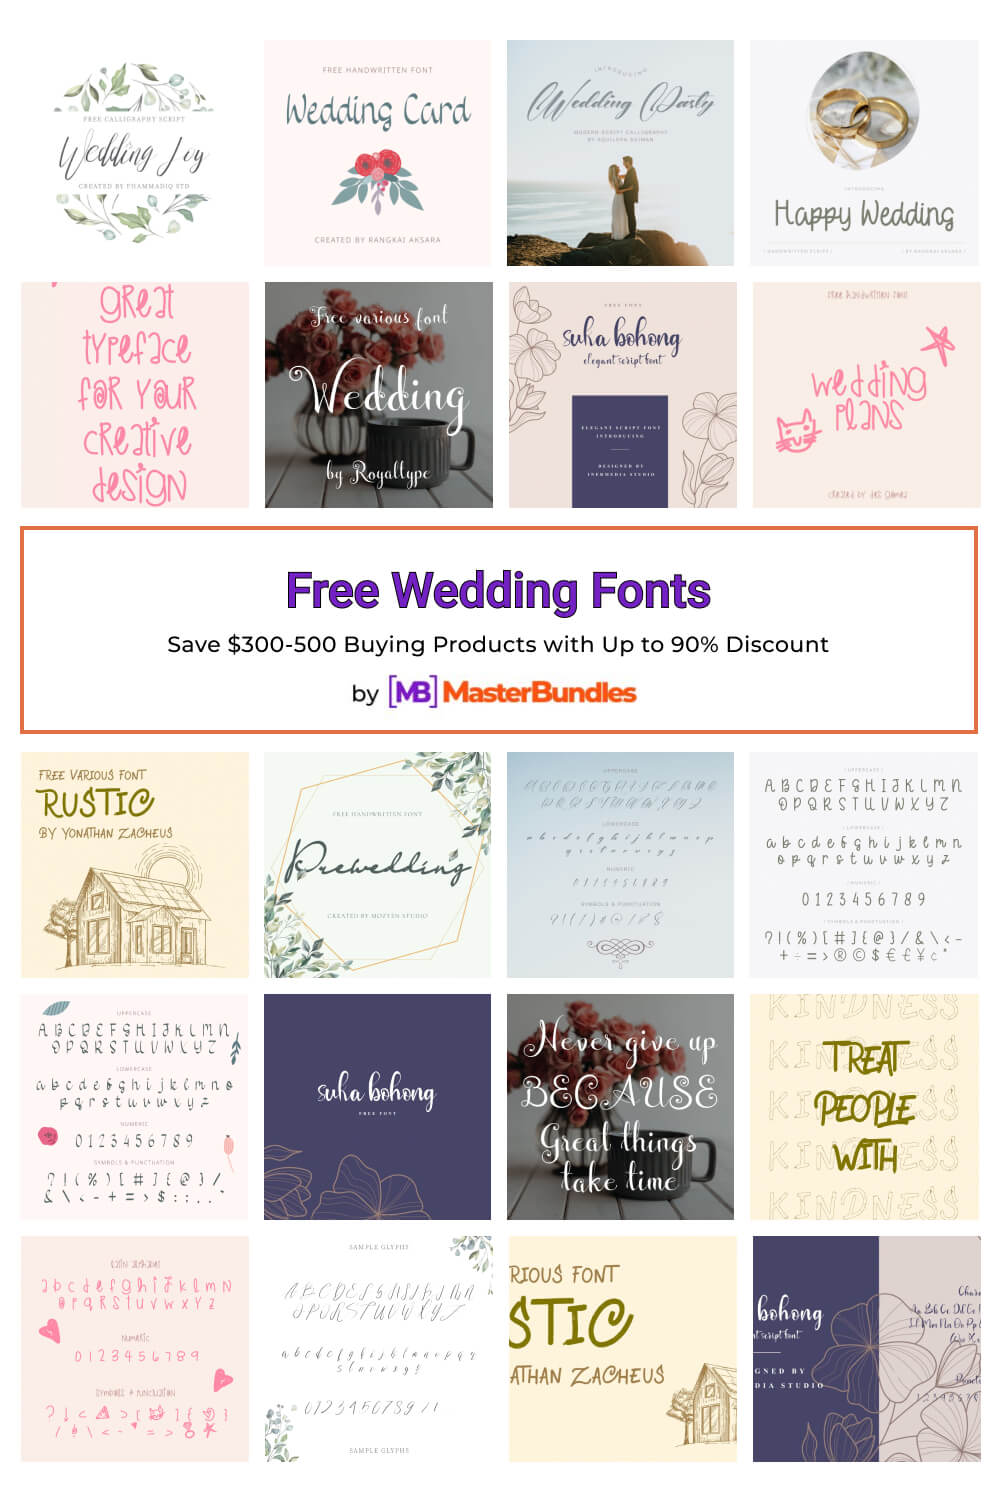 free wedding fonts pinterest image.